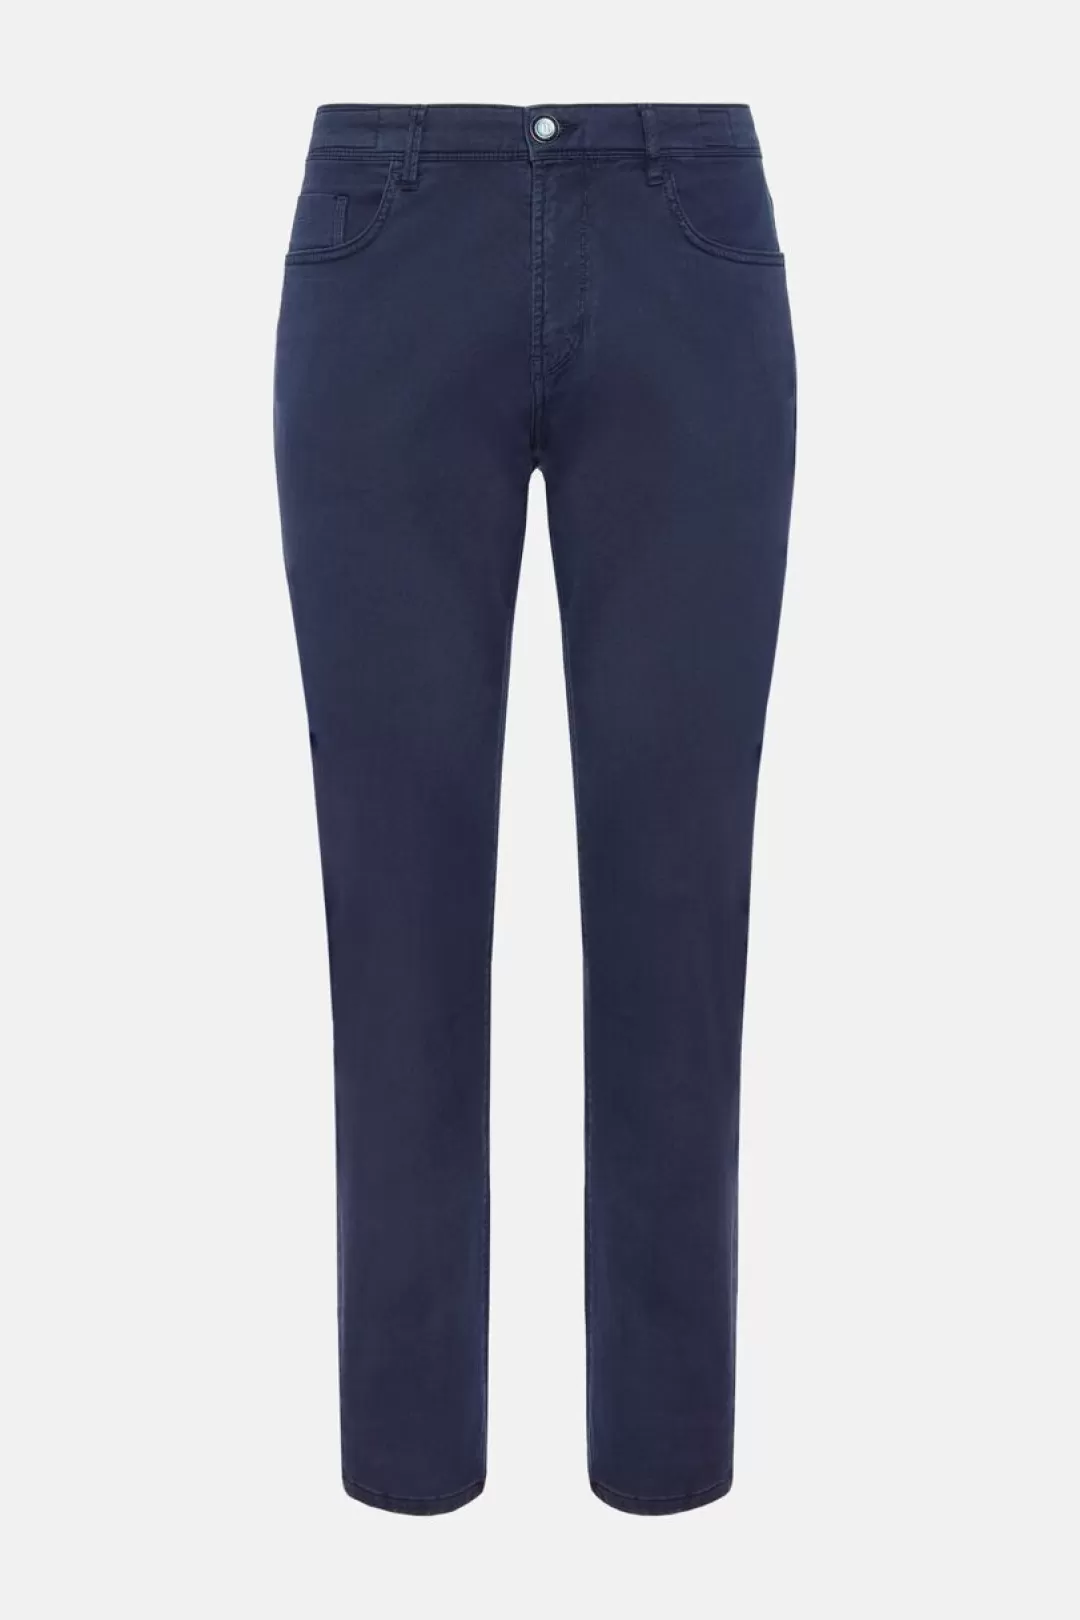 Boggi Jeans In Cotone Tencel Elasticizzato Air-Blu Clearance